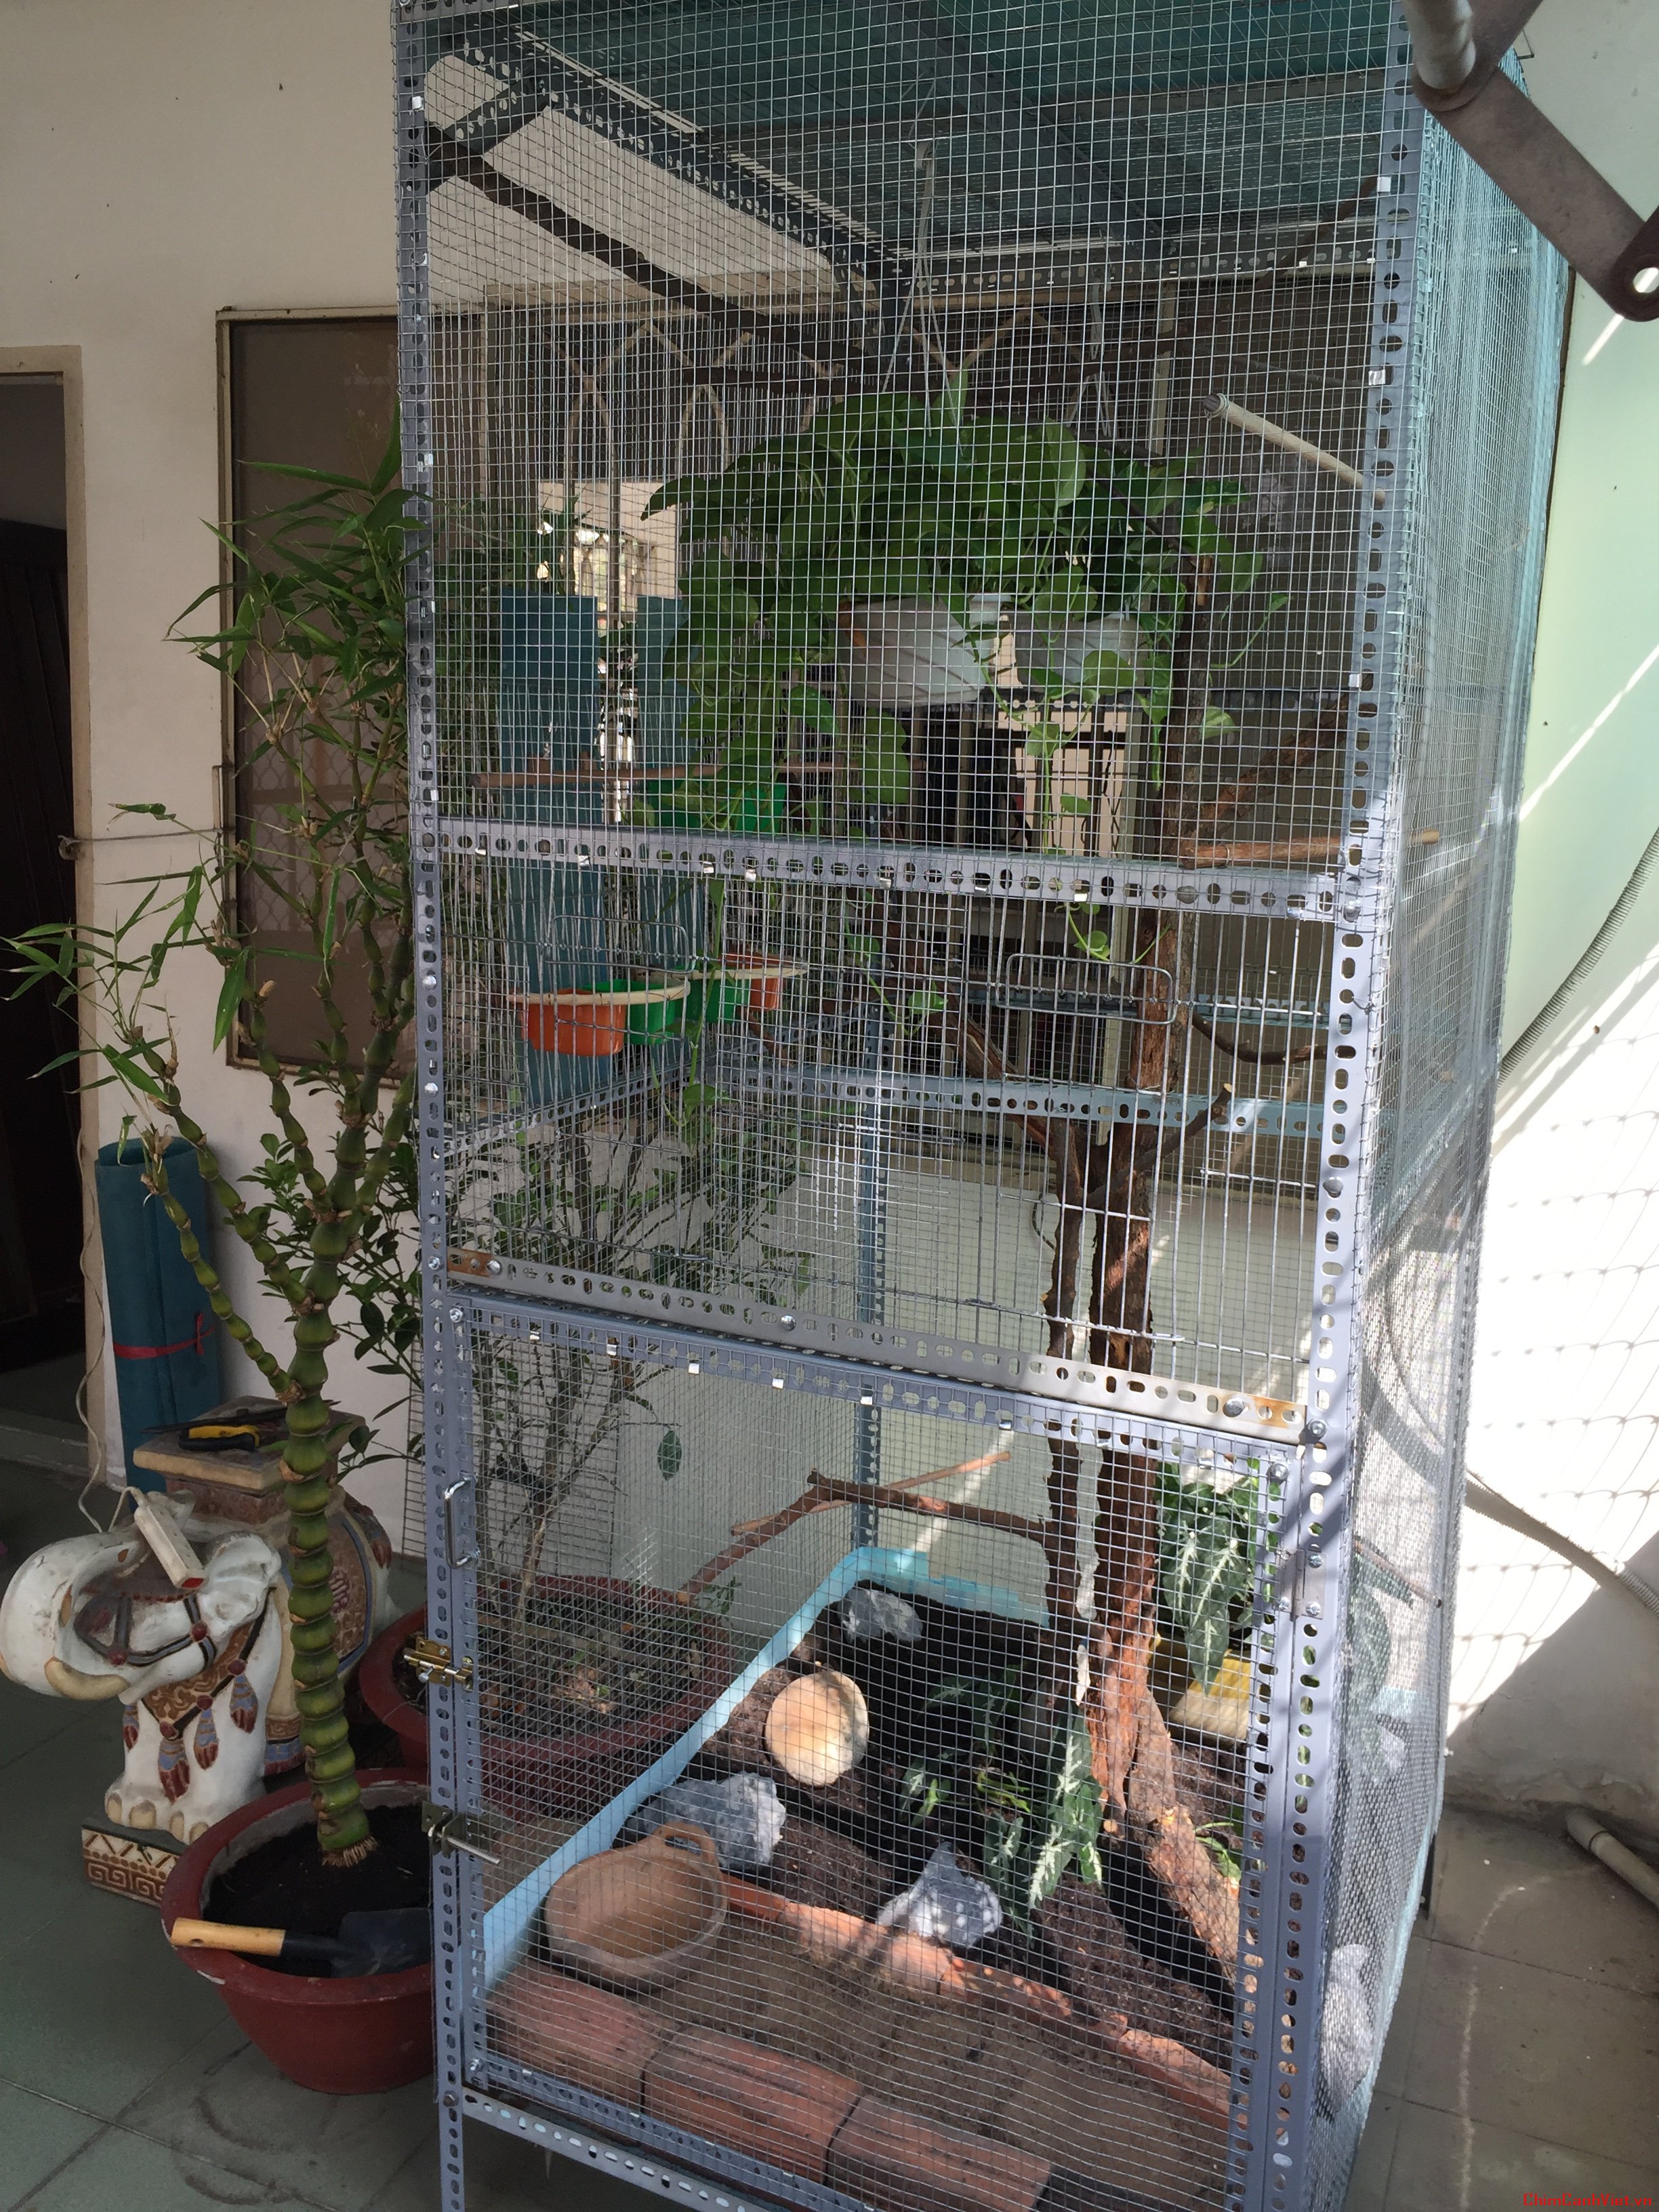 Kỹ sư ở Hà Nội "mang quê vào phố", làm vườn, nuôi chim trên nóc nhà | Báo  Dân trí